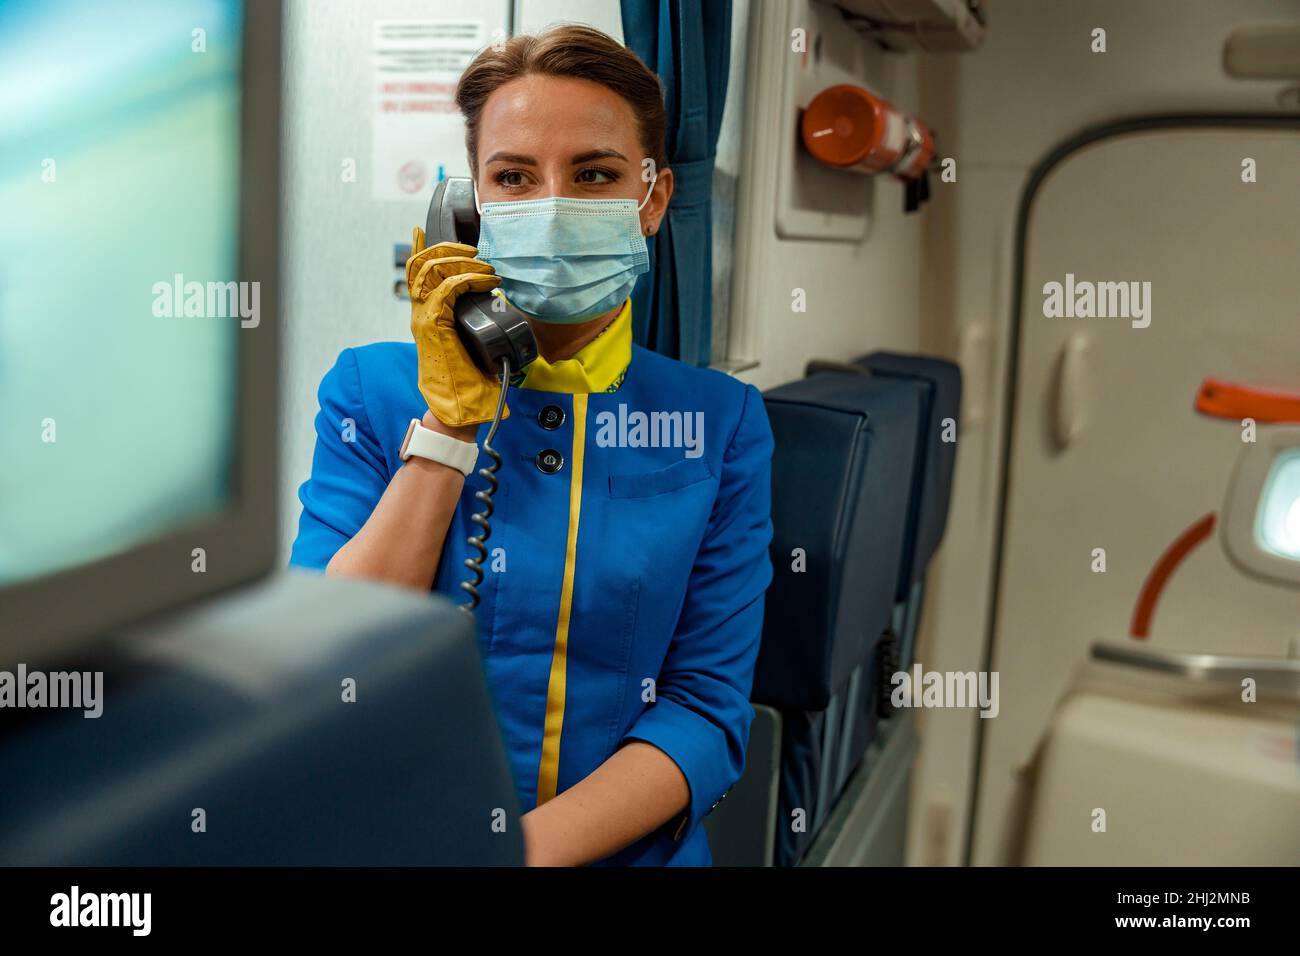 Hôtesse dans un masque médical utilisant le téléphone dans la cabine de l'avion Banque D'Images